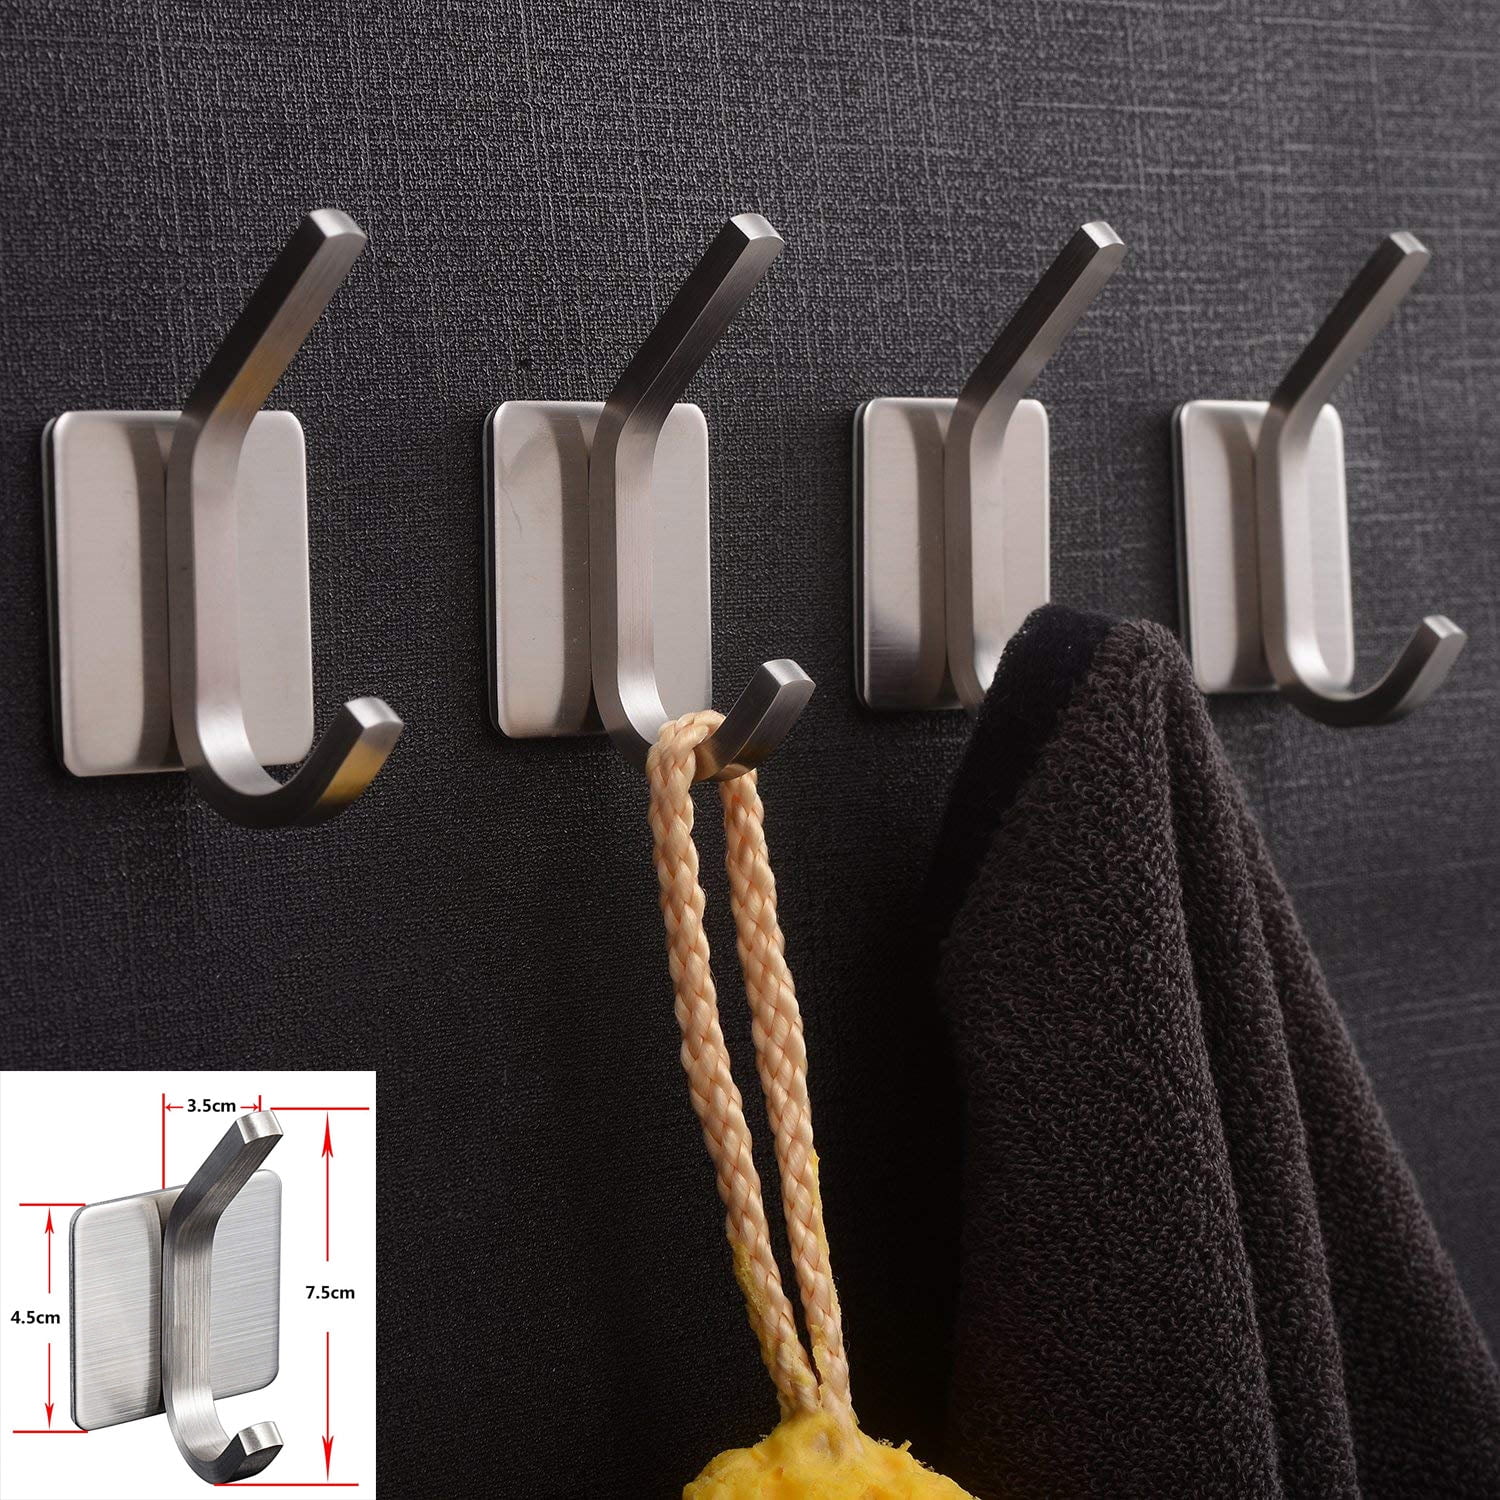 Towel Hook,3M Hooks,Adhesive Hooks Bathroom, Self Adhesive Coat